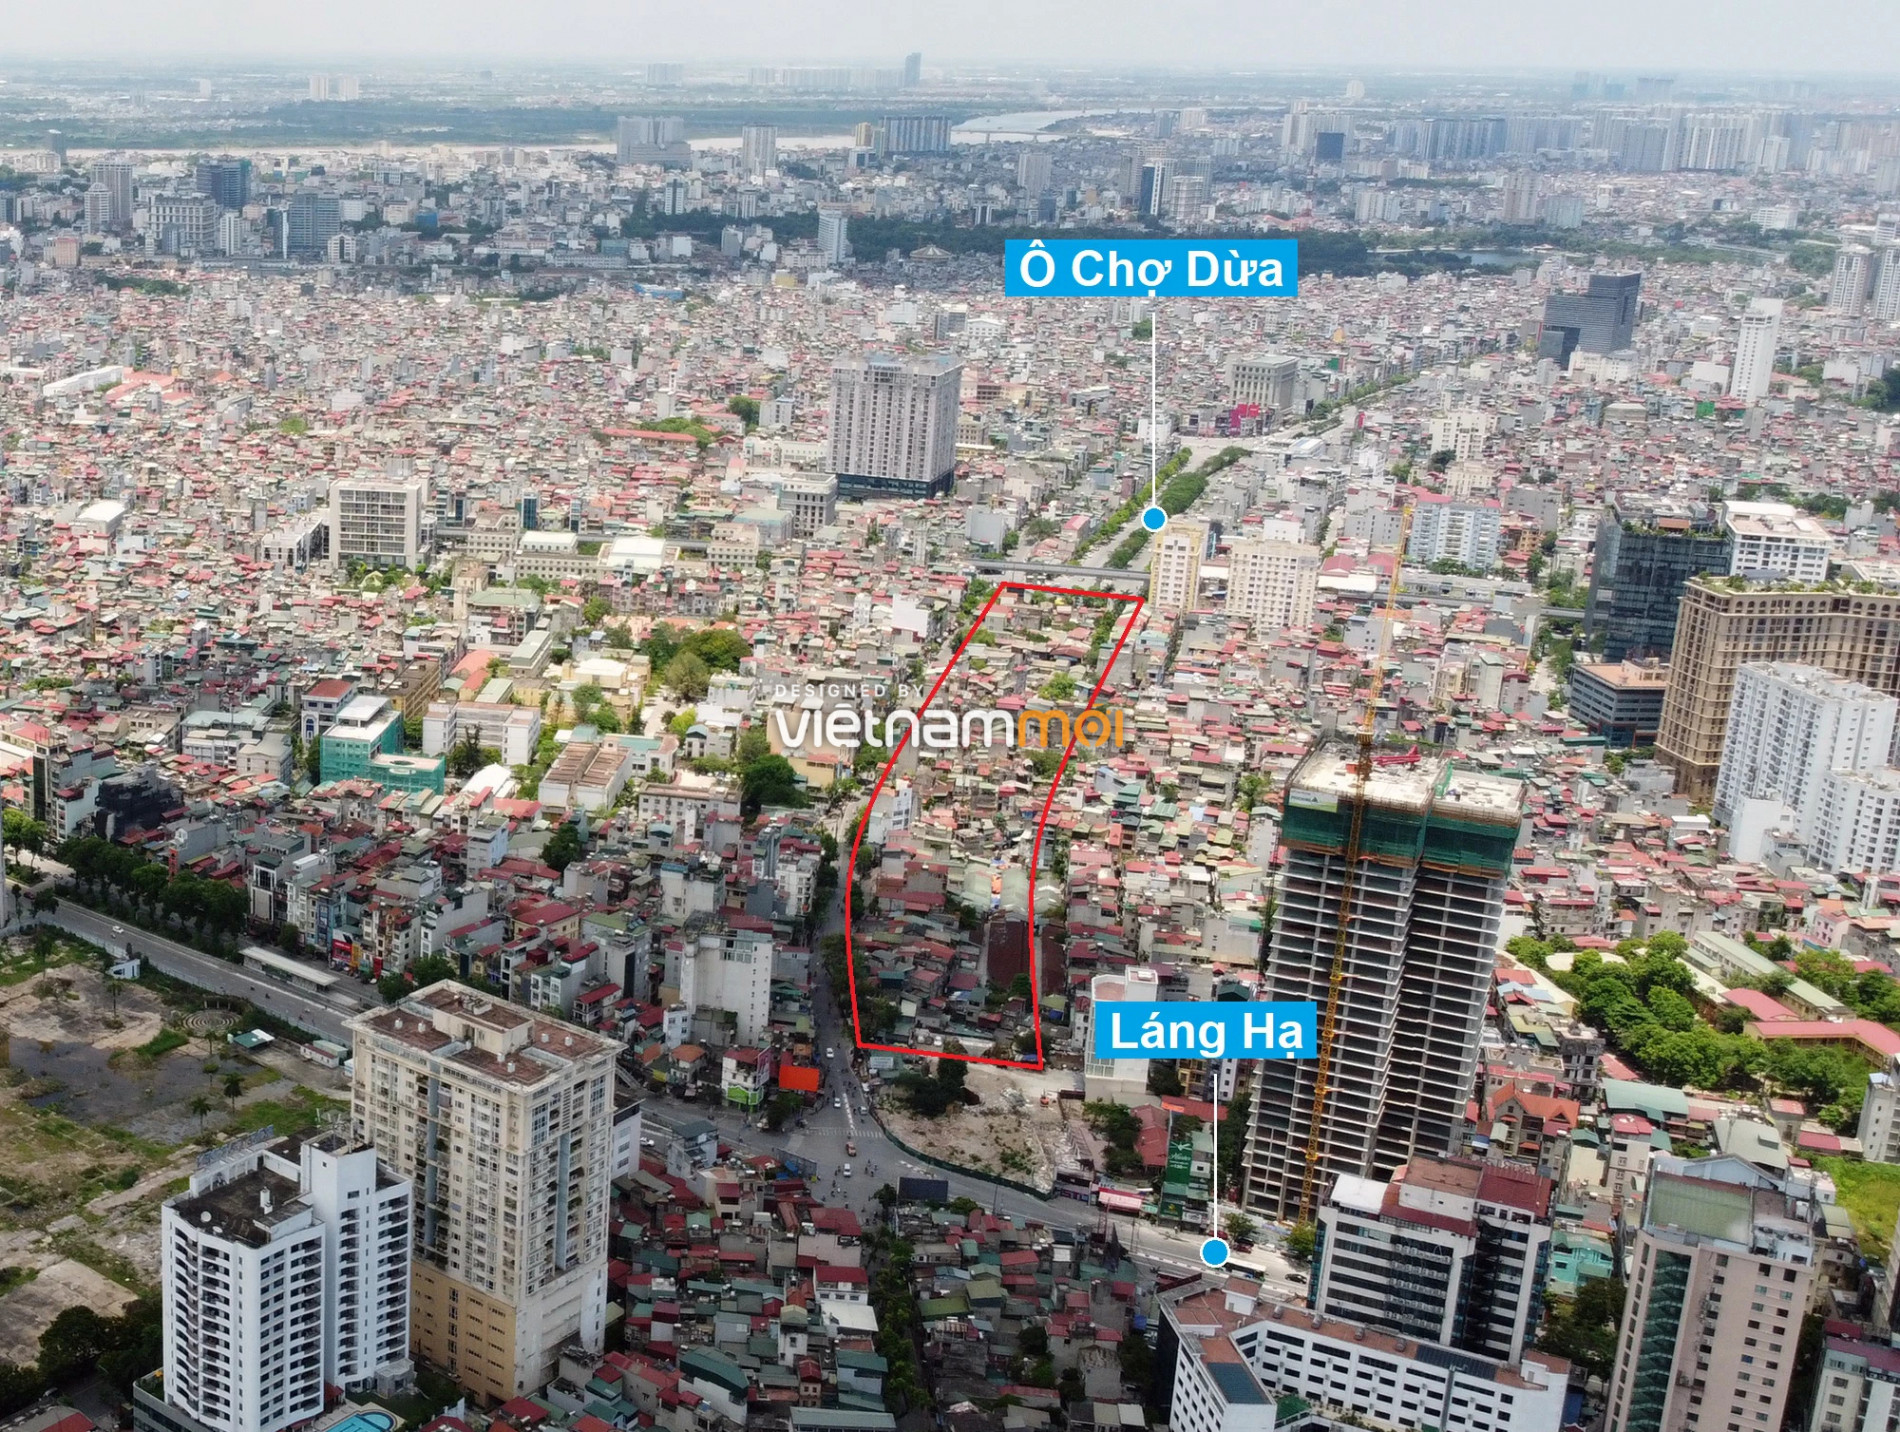 Những khu đất sắp thu hồi để mở đường ở quận Đống Đa, Hà Nội (phần 4) - Ảnh 17.